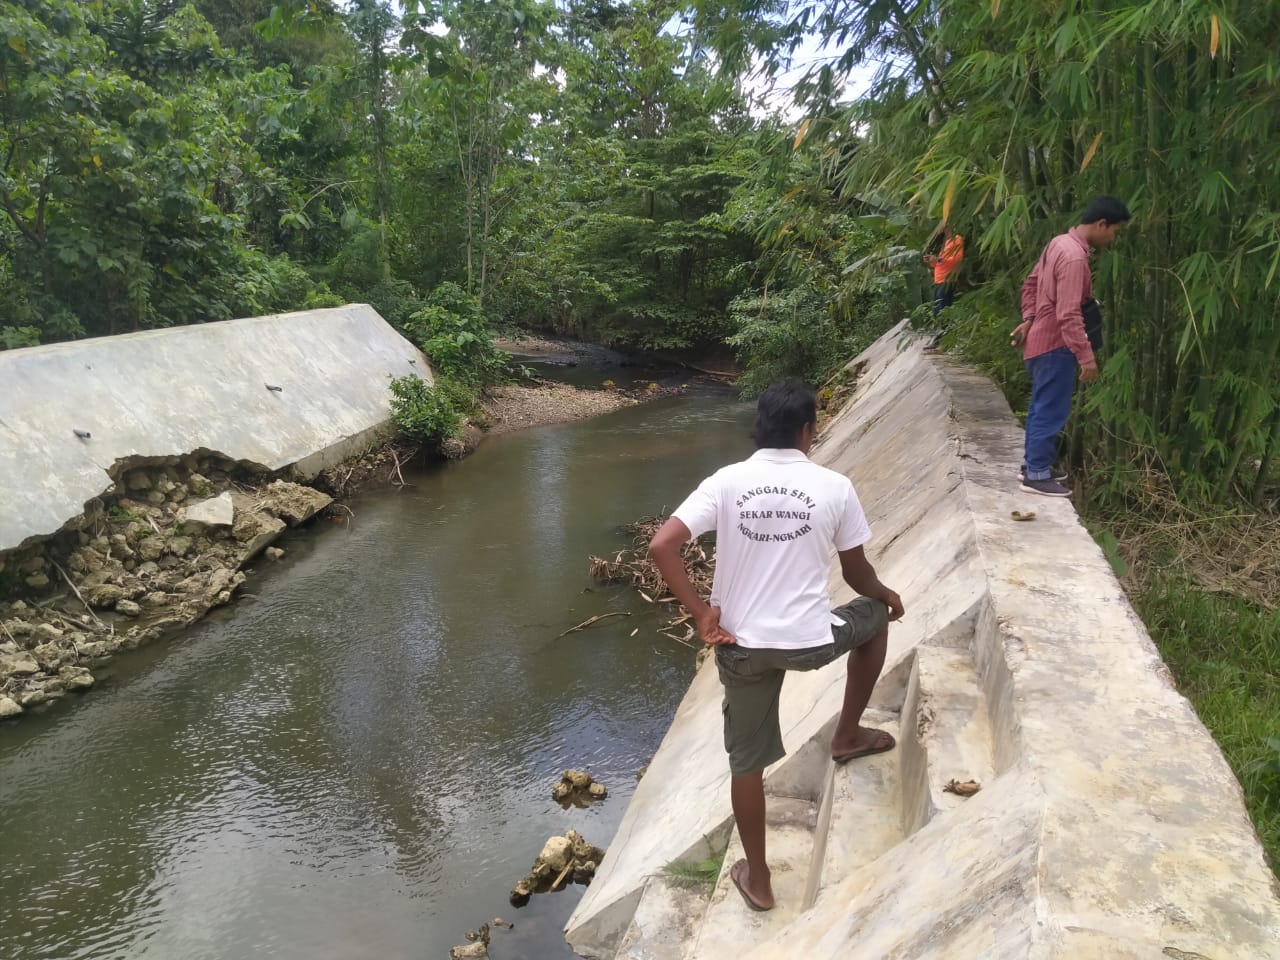 Ketua Subak Puri Sari Ngkari-Ngkari, Made Subawa (baju putih) menunjukkan talud sungai yang baru sepotong. Sungai itu selalu meluap ke area persawahan setiap hujan lama.(Foto Texandi)